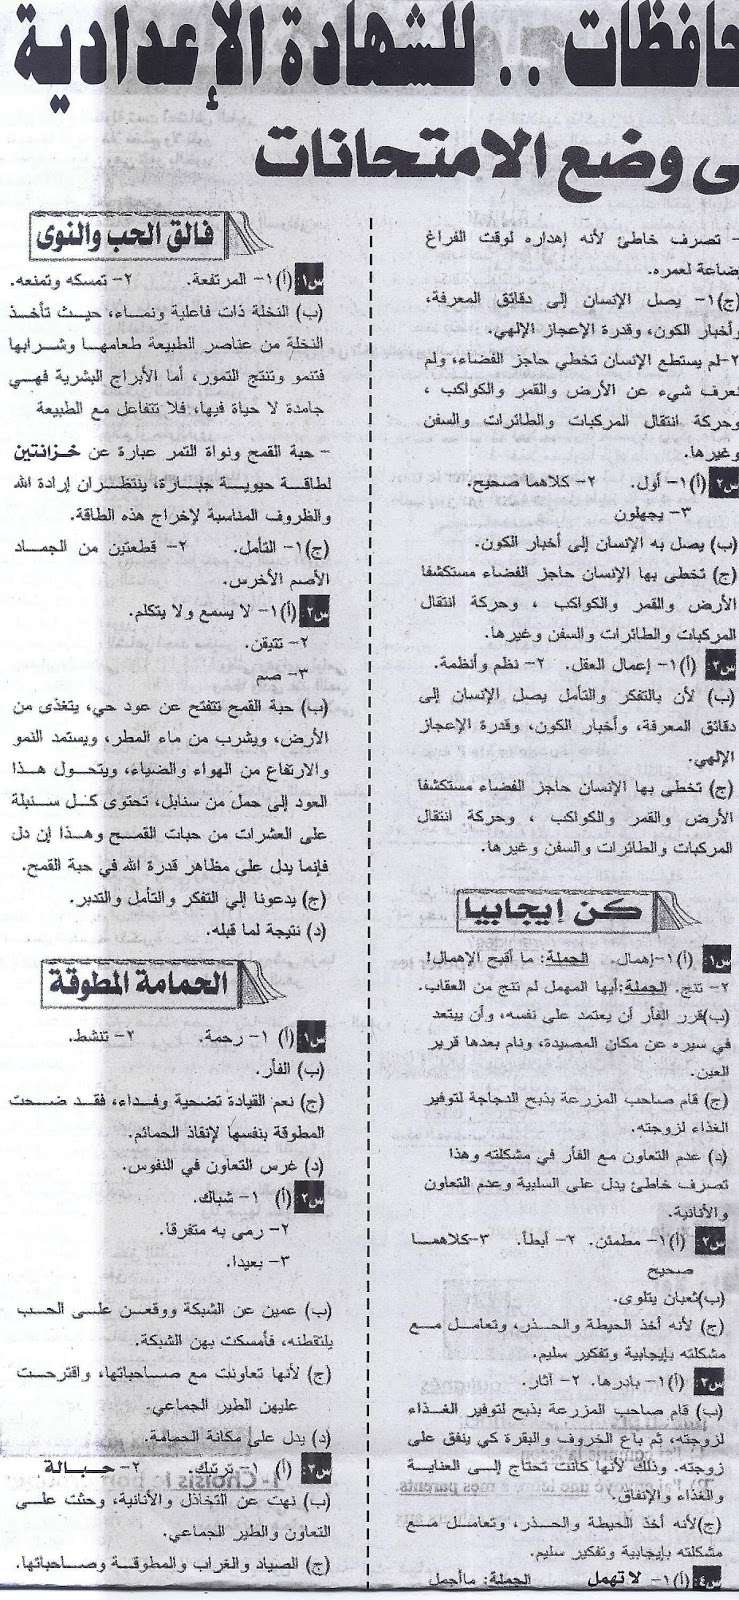 مراجعة لغة العربية الشهادة الإعدادية الترم الثانى "بنك اسئلة اعدة خبراء ومتخصصون فى وضع الامتحانات" 1110